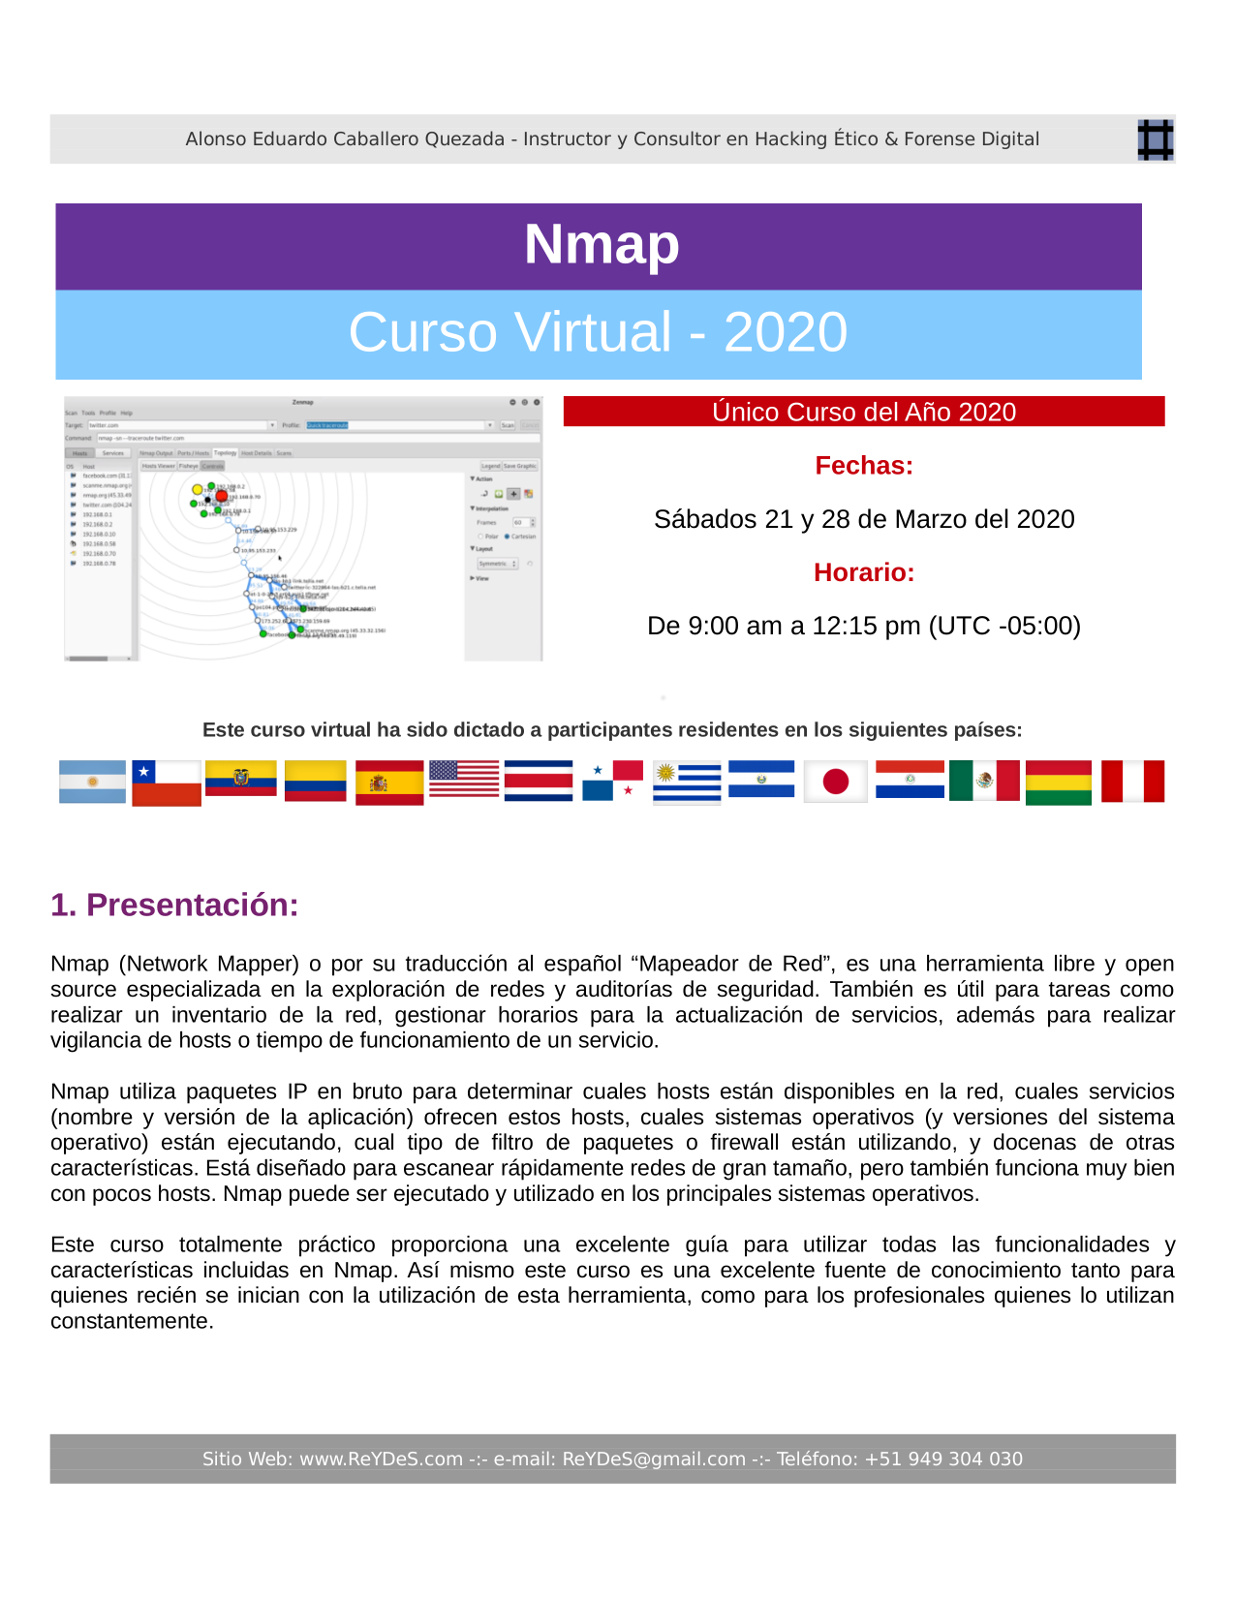 Único Curso Virtual de Nmap 2020